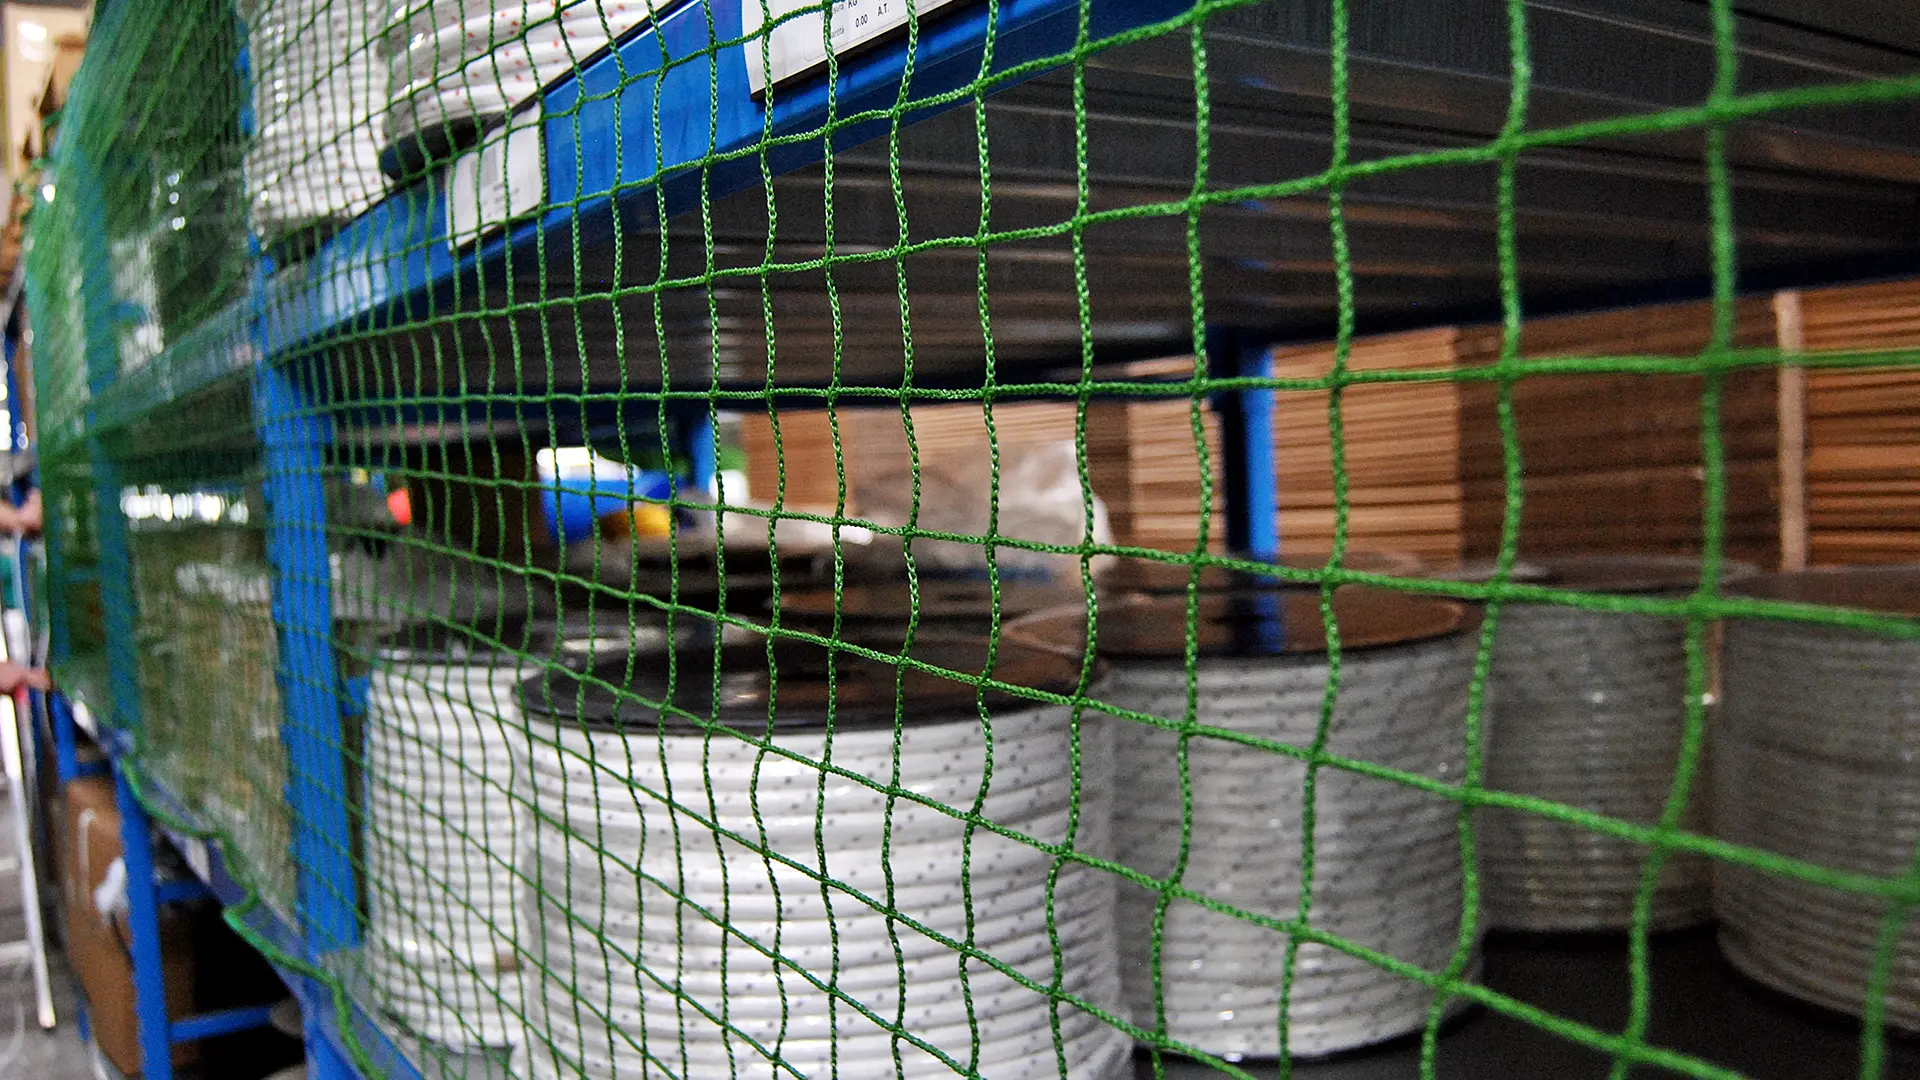 Shelf nets